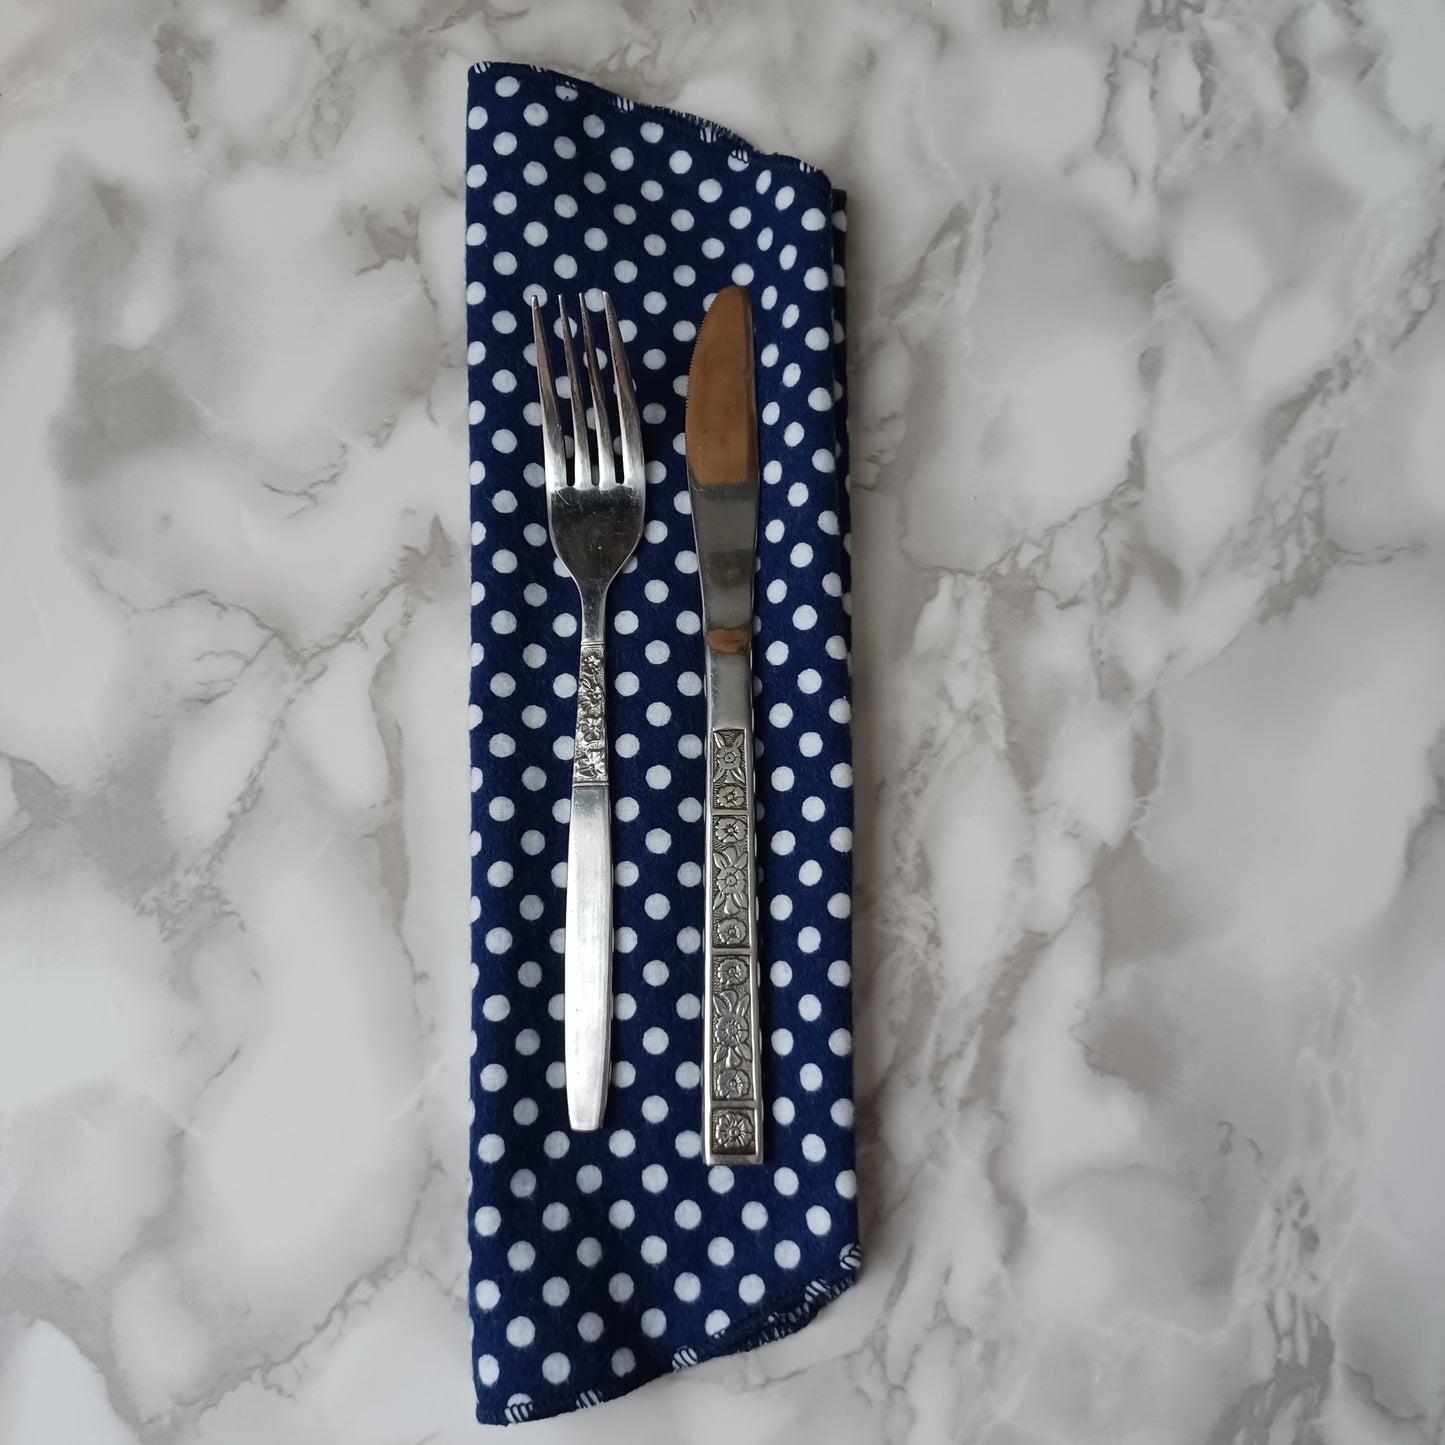 Serviettes de table et Essuie-tout-Bleu avec picots blancs/Napkins and Paperless towels-Blue with polka dot